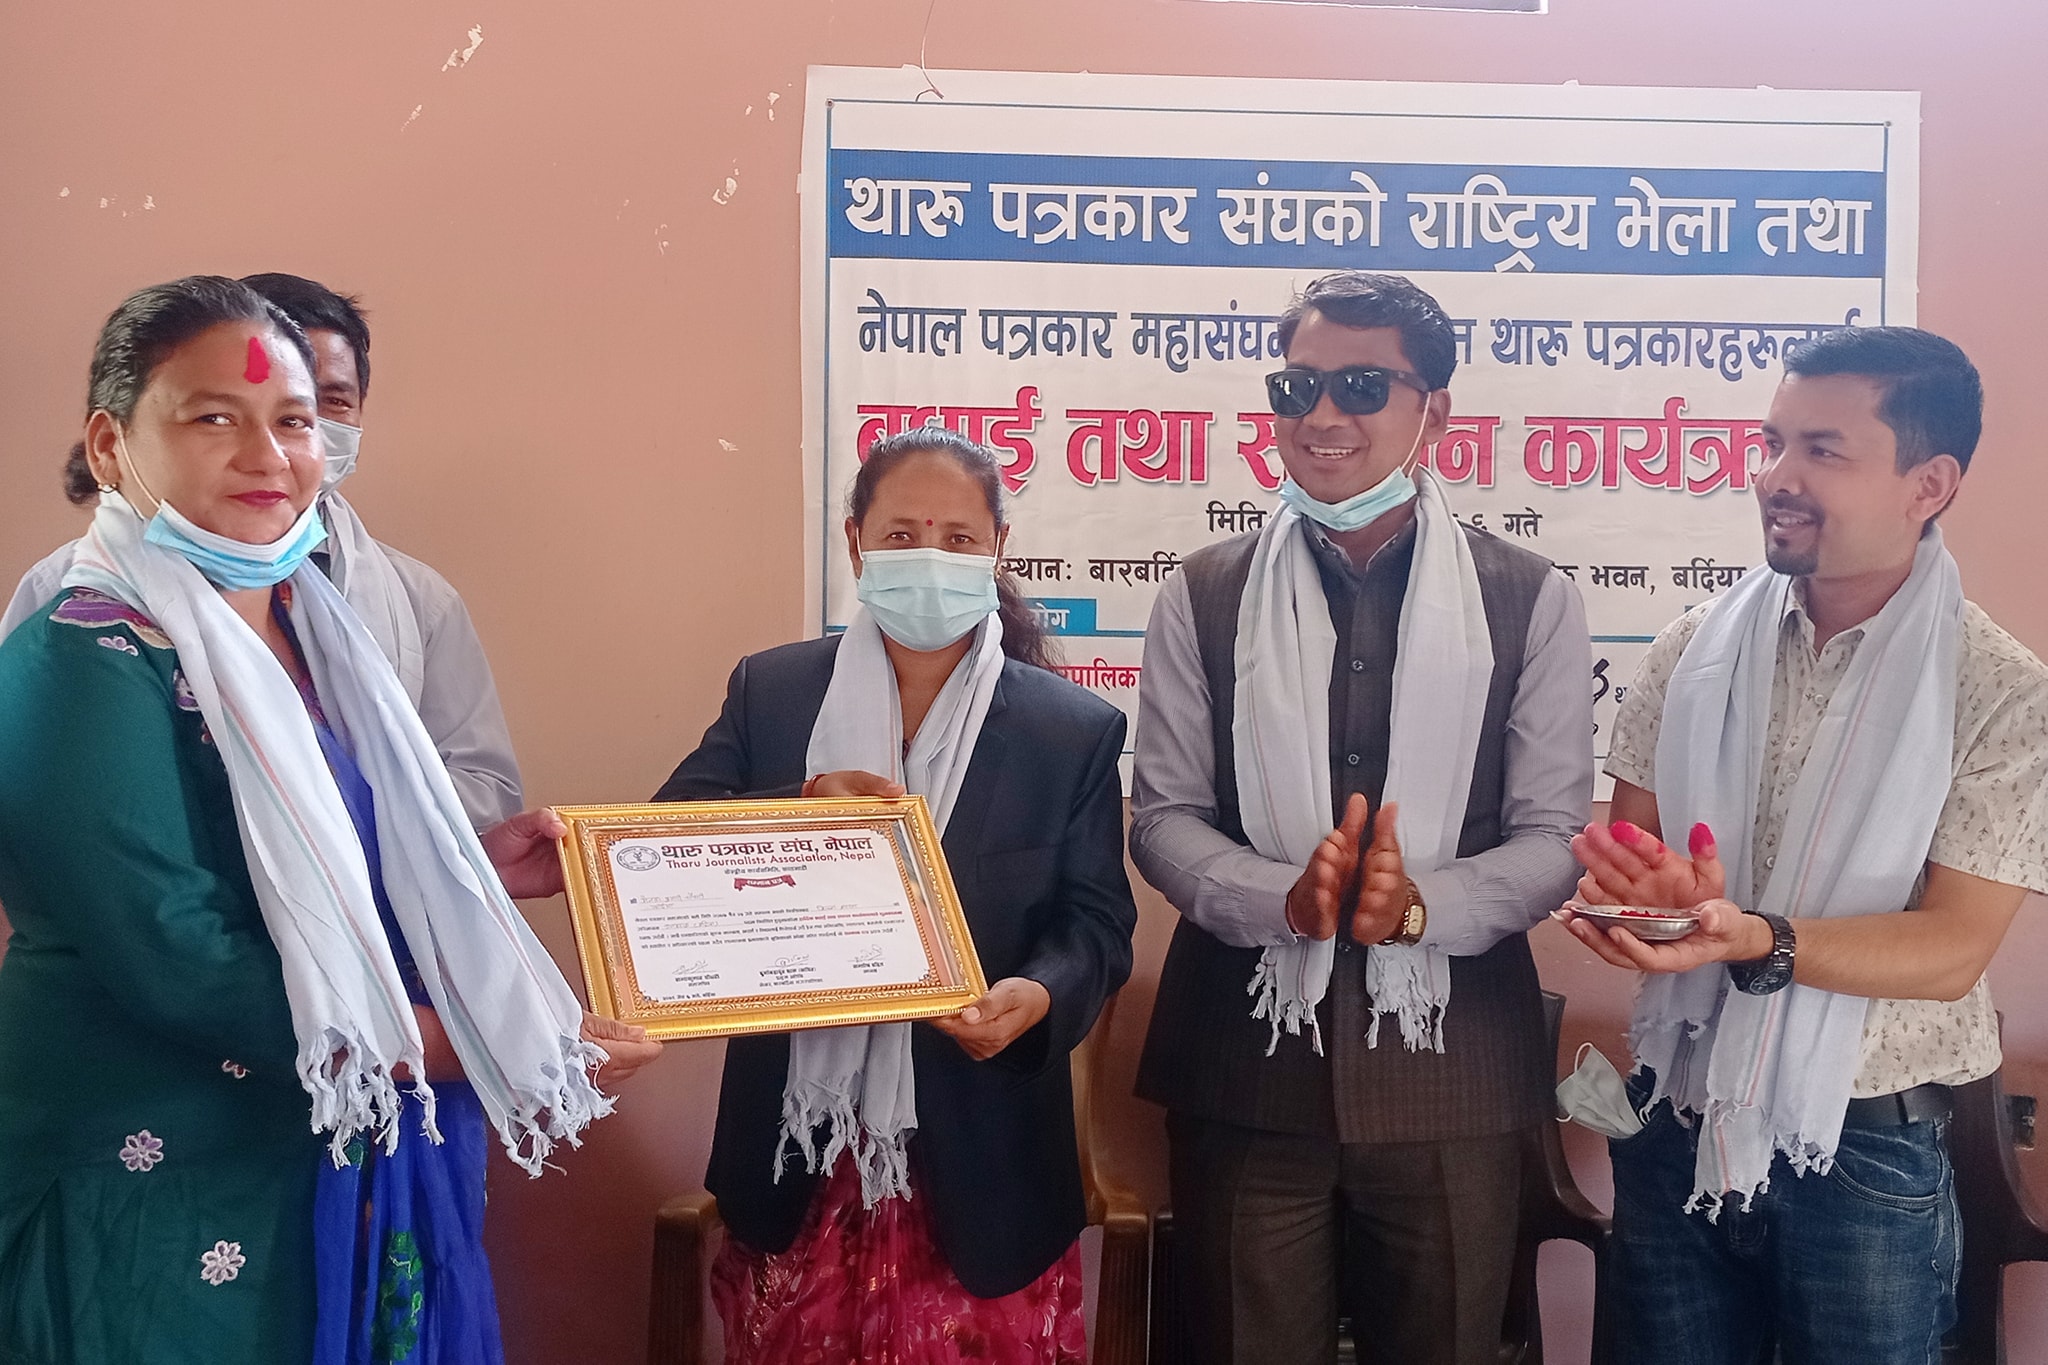 थारु पत्रकार संघ, नेपालके राष्ट्रिय भेला सम्पन्न,महासंघम निर्वाचित पत्रकारहुकन सम्मान